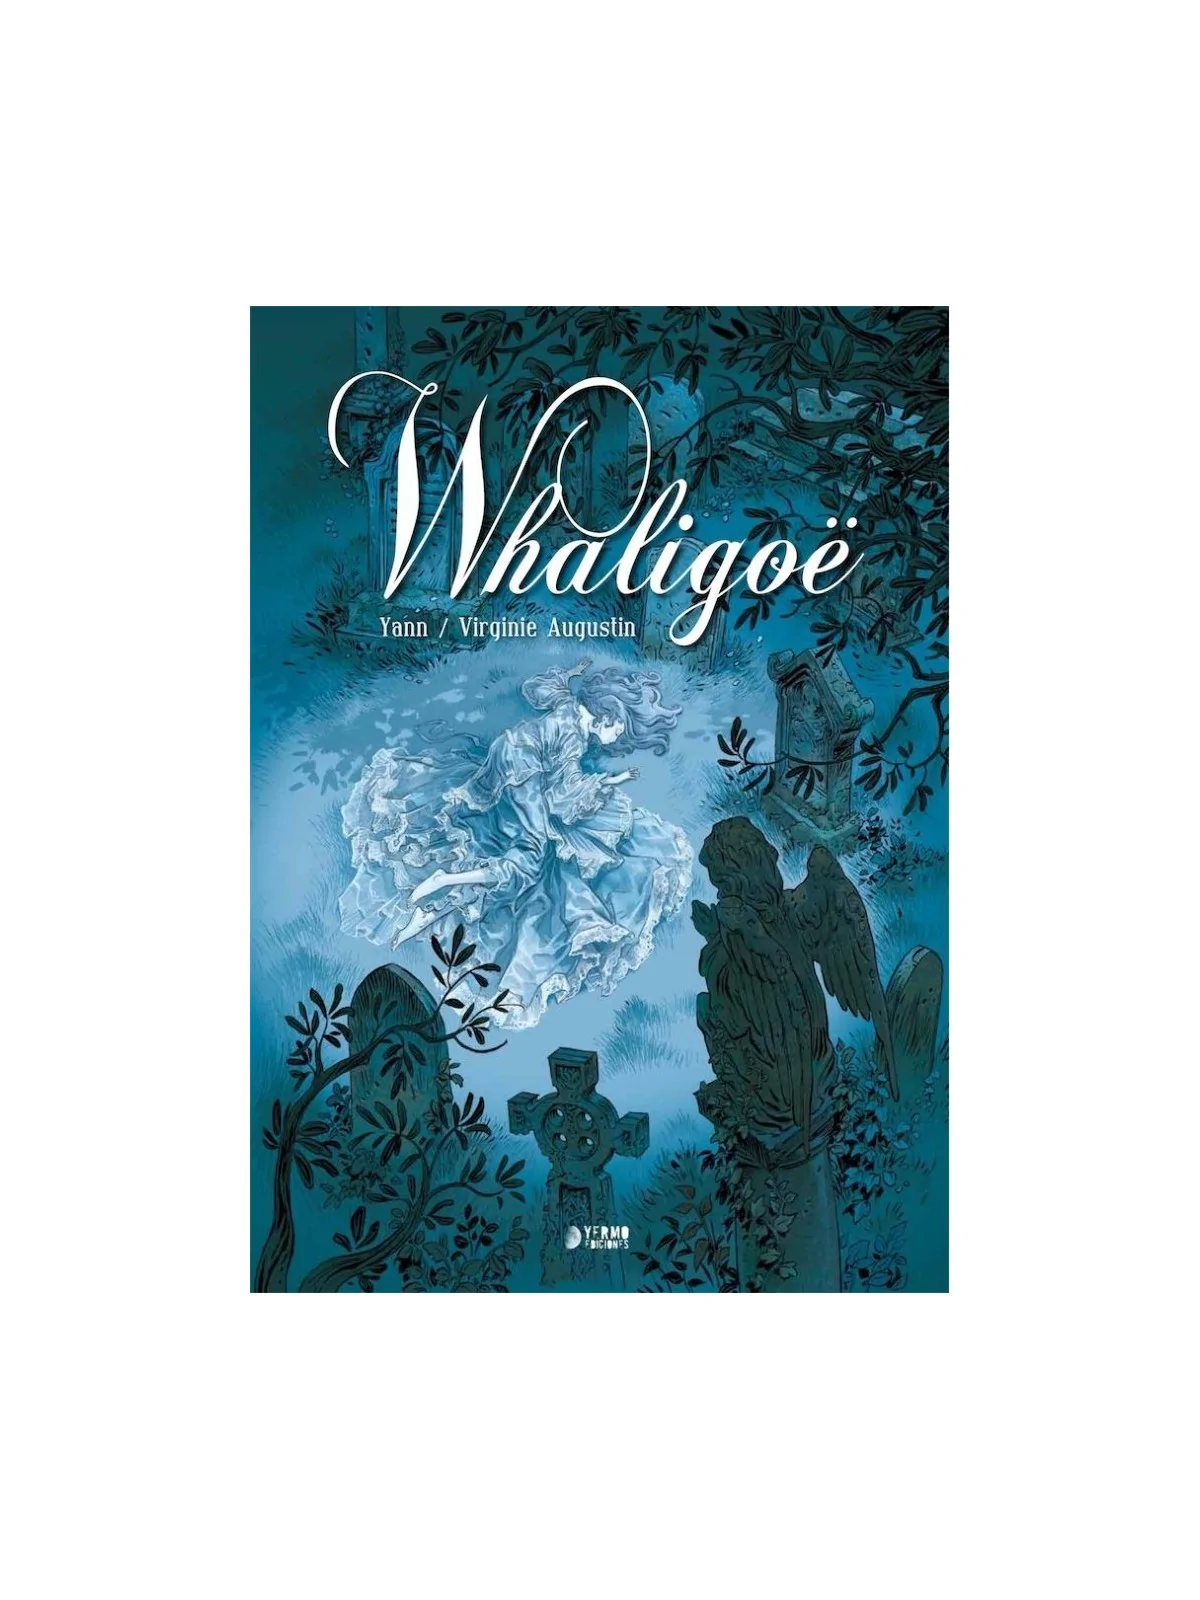 Comprar Whaligoe barato al mejor precio 20,90 € de Yermo Ediciones